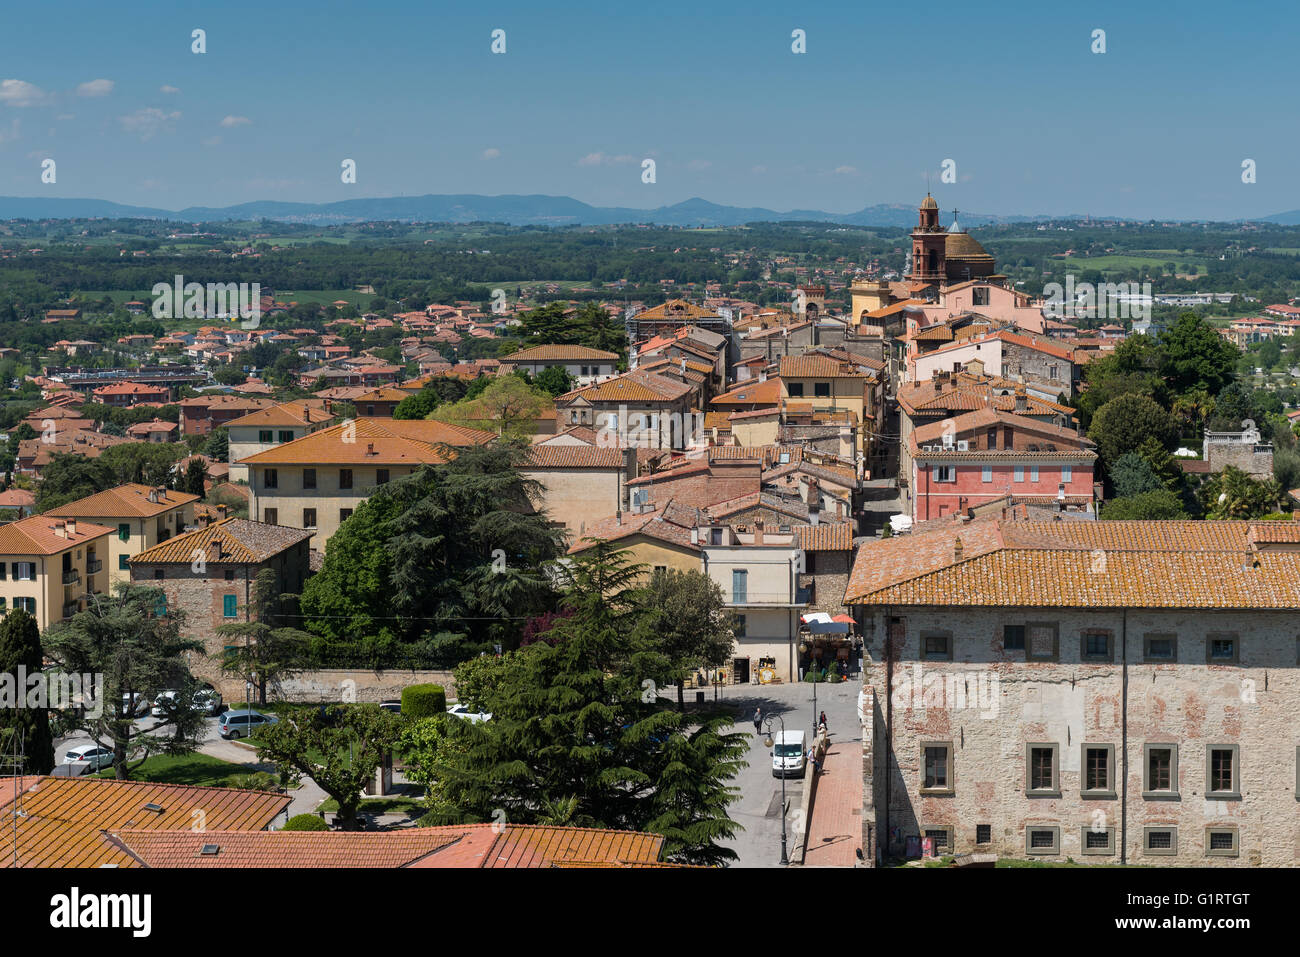 Historic city center, Castiglione del Lago, Umbria, Italy Stock Photo